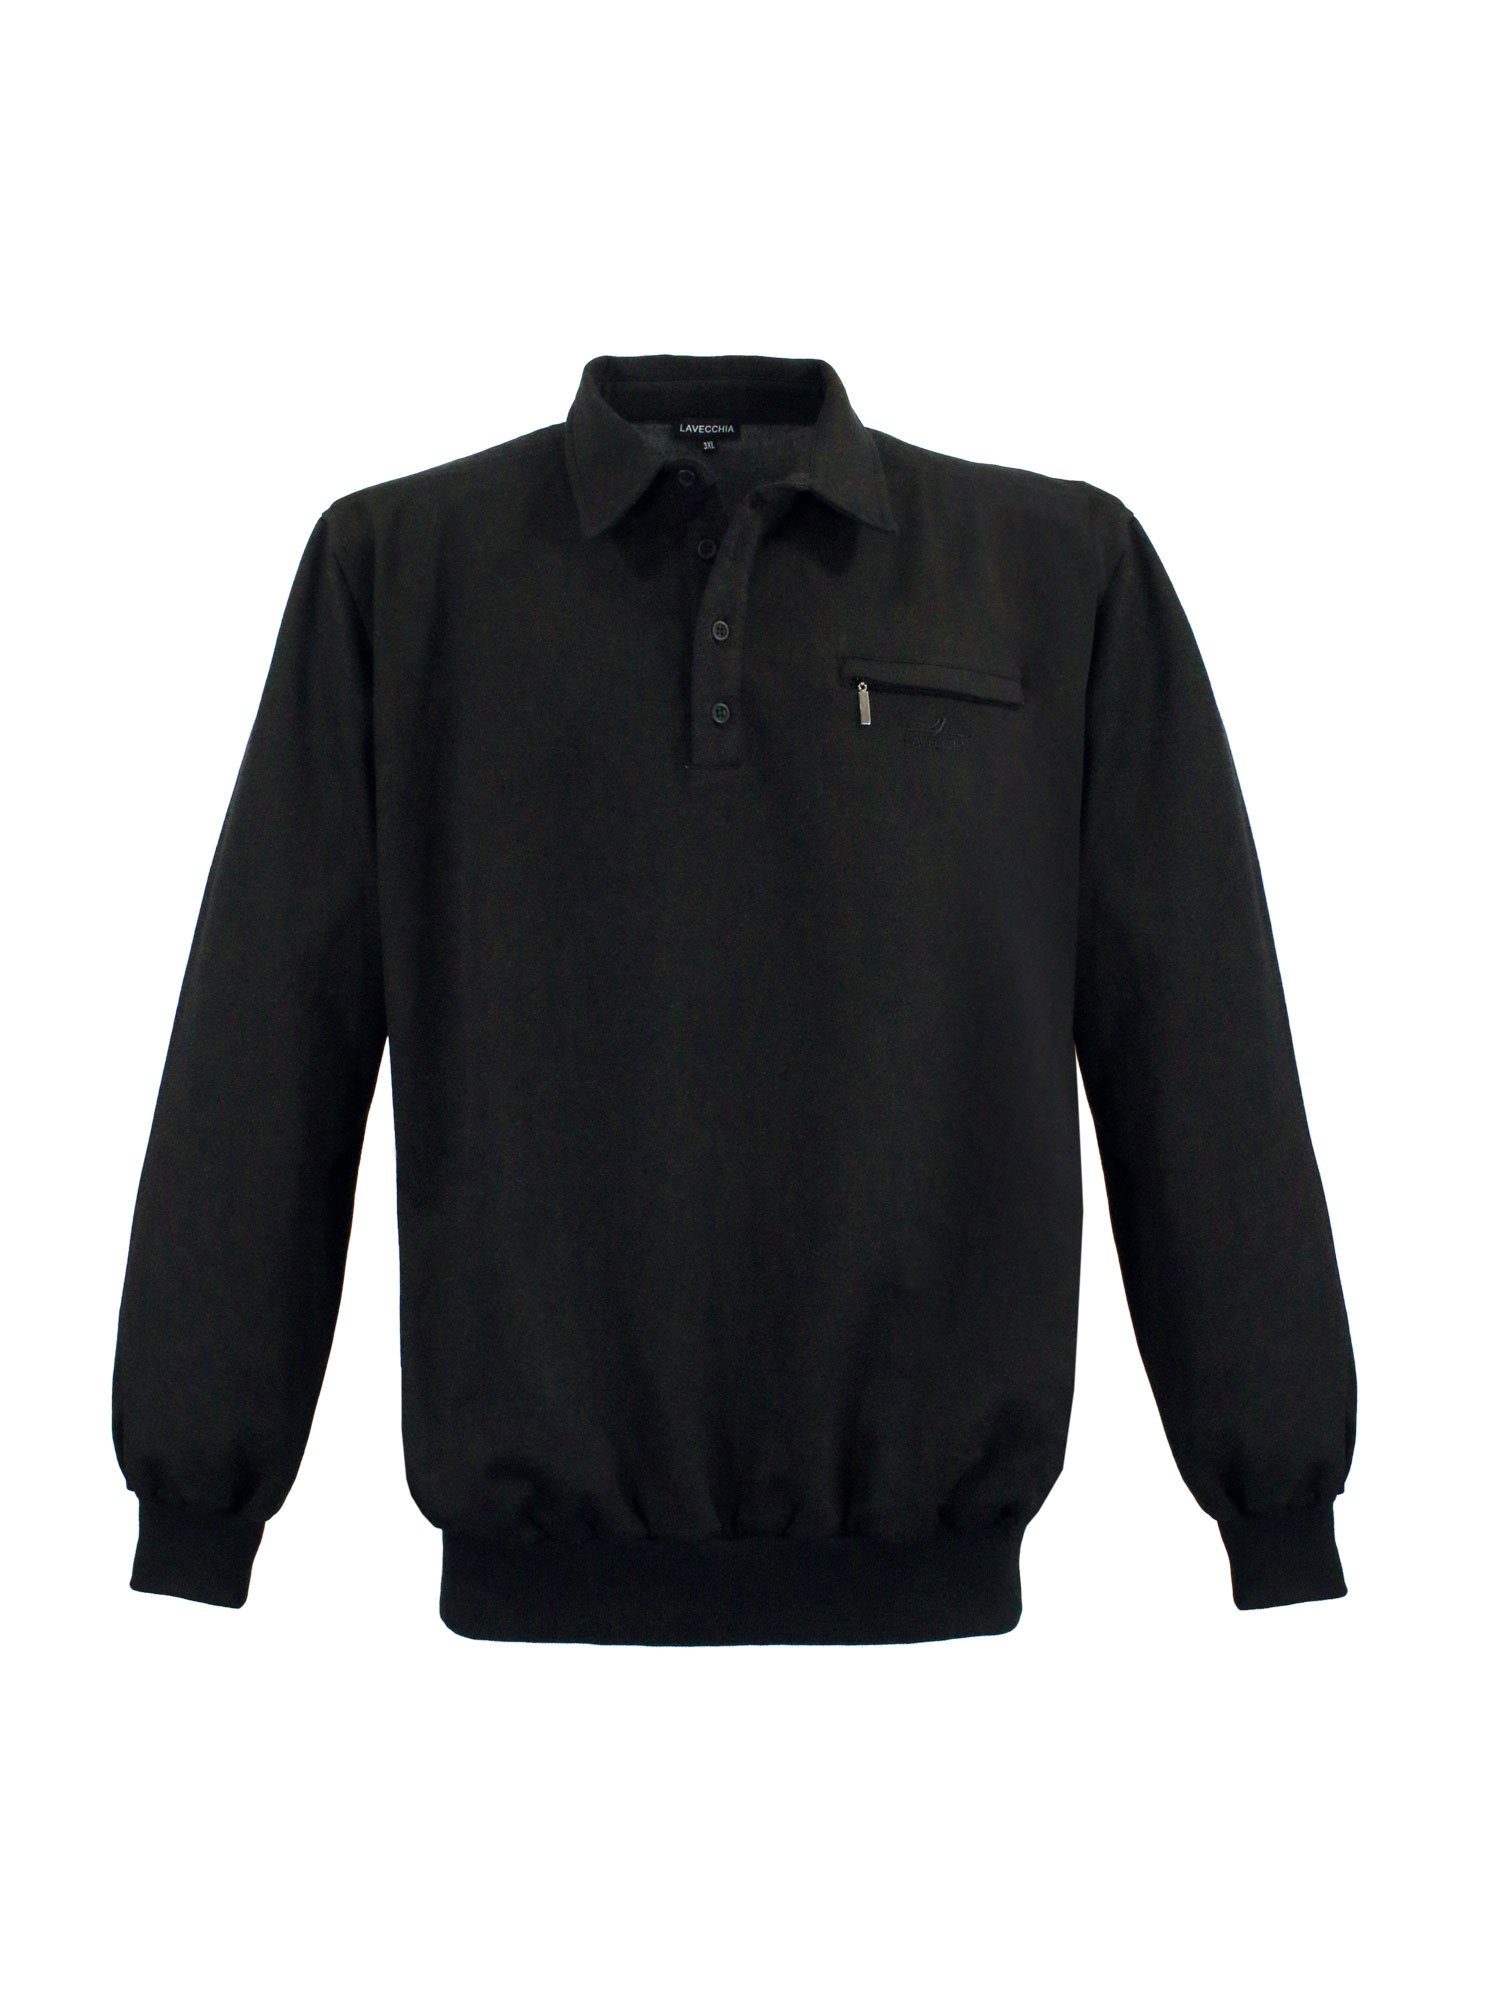 Lavecchia Sweatshirt schwarz LV-705S Übergrößen Pulli Sweater Pullover Sweat